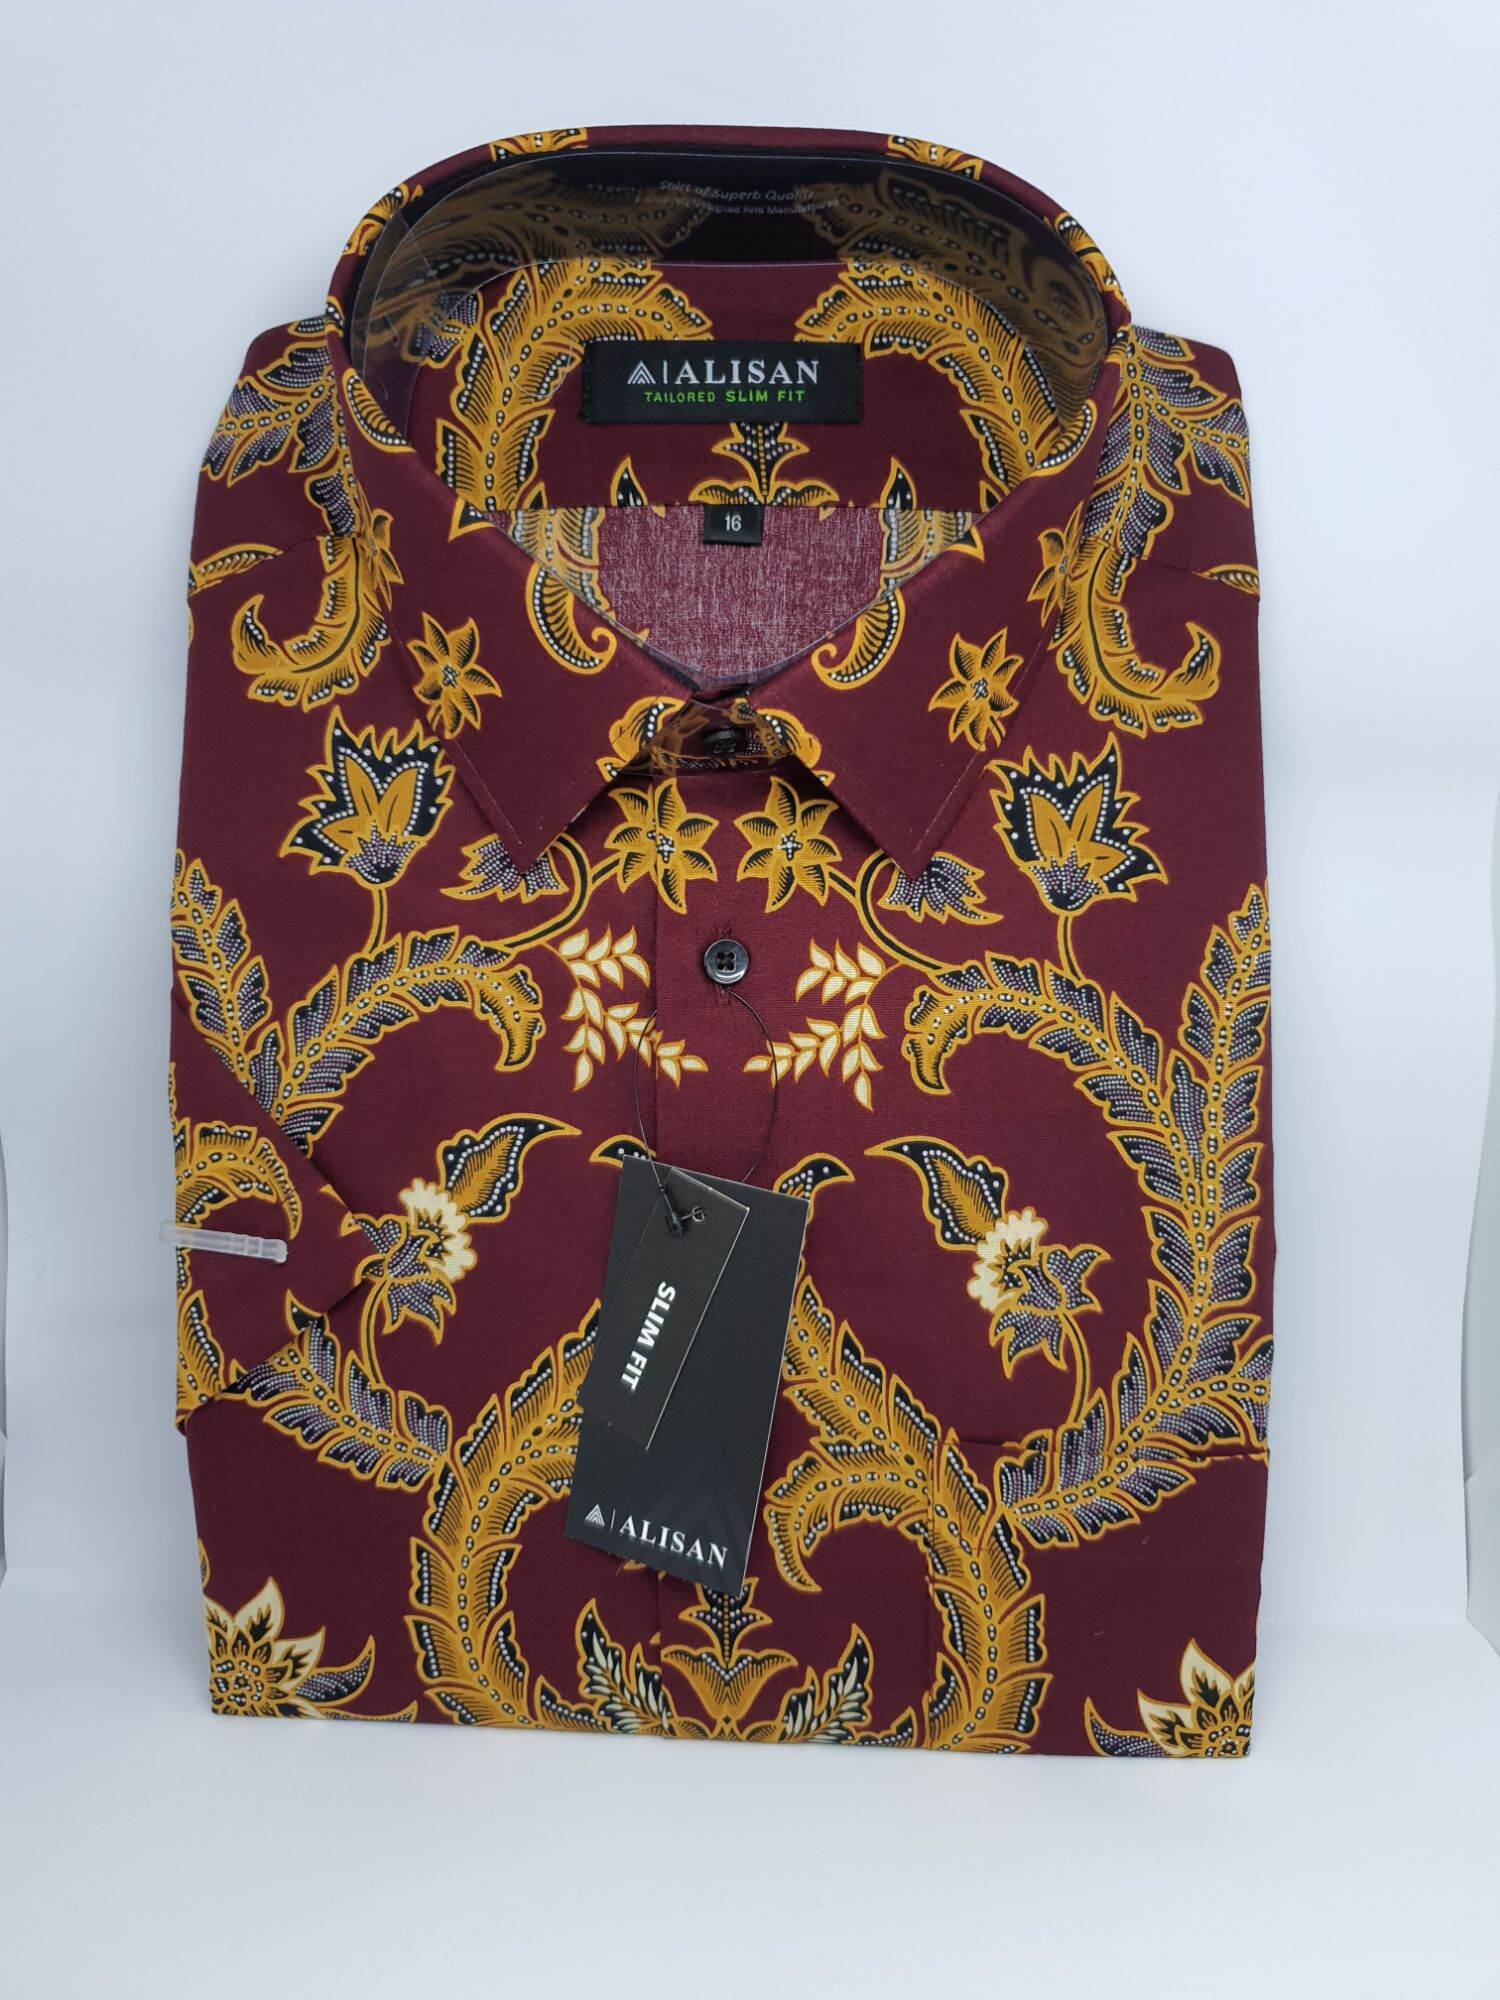 Batik shirts for men Alisan Top Brand Indonesia | eBay